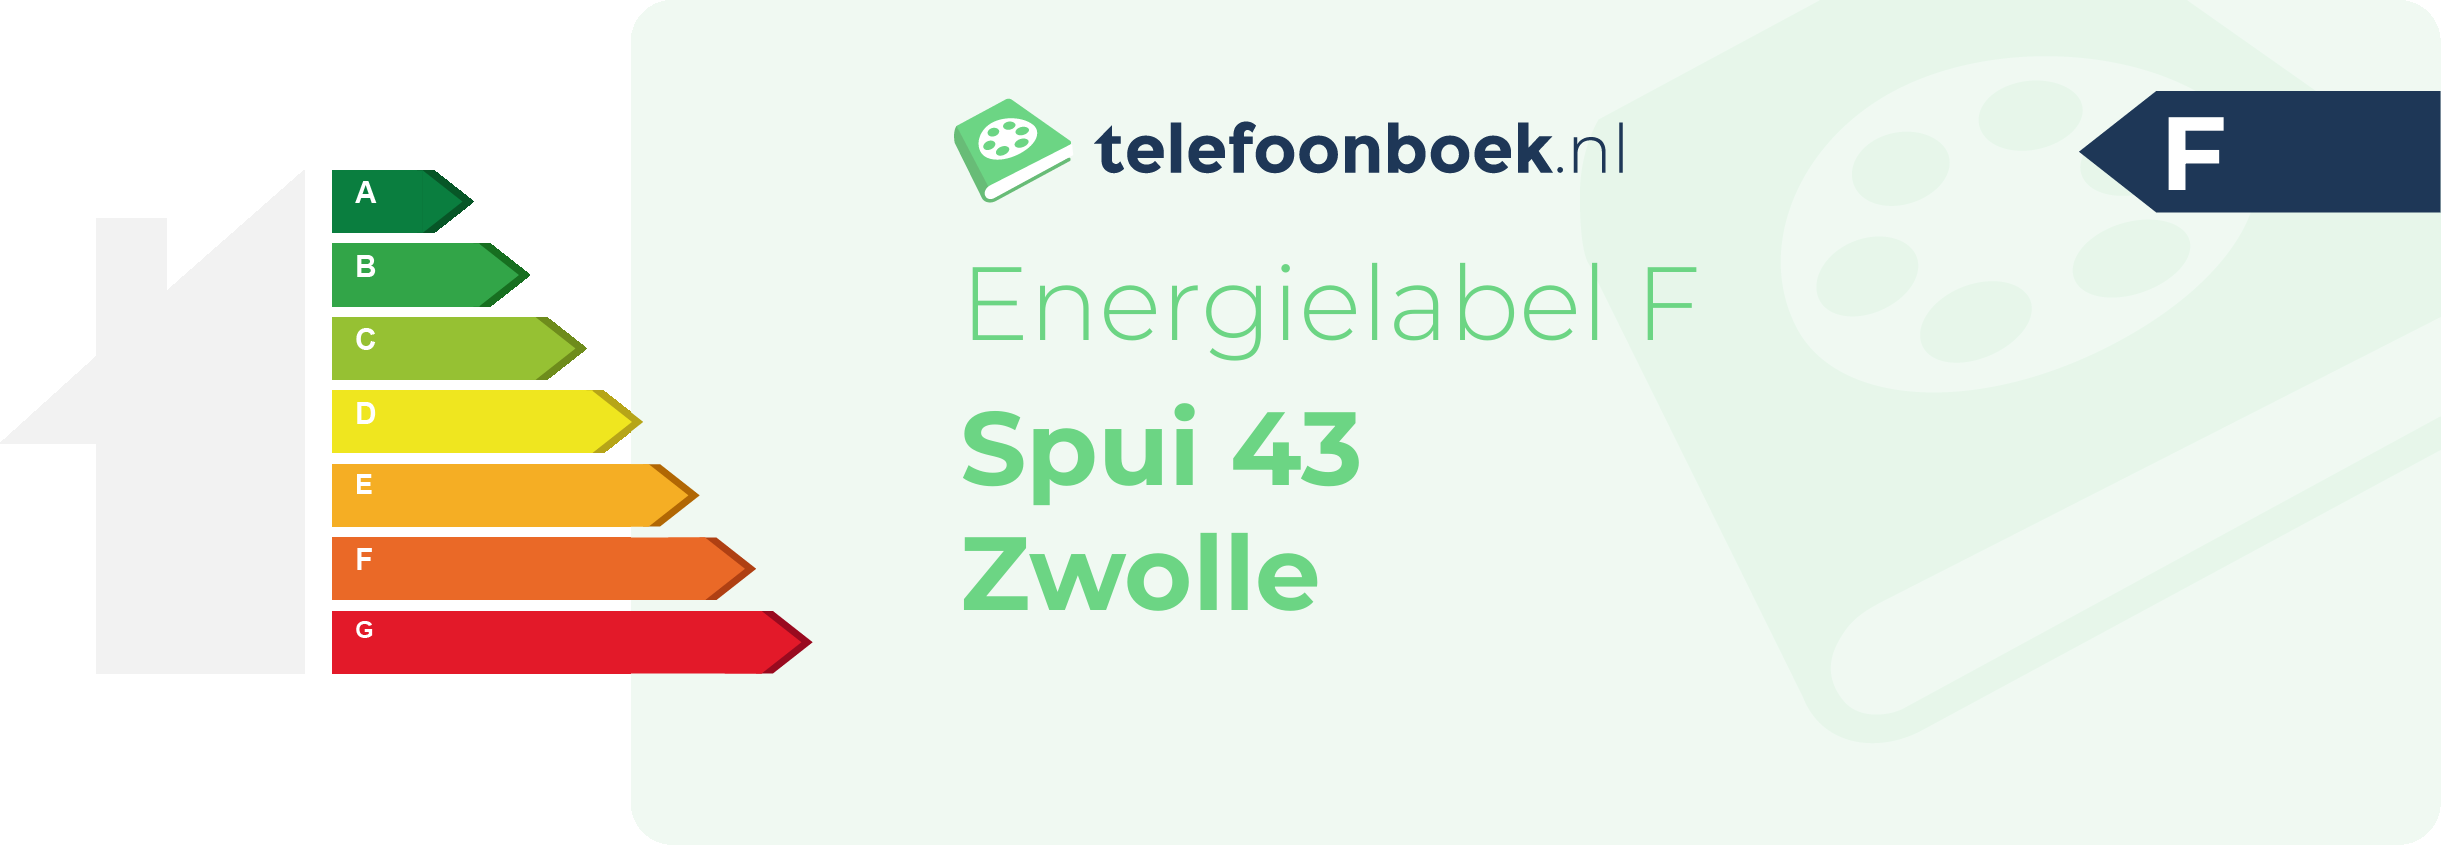 Energielabel Spui 43 Zwolle